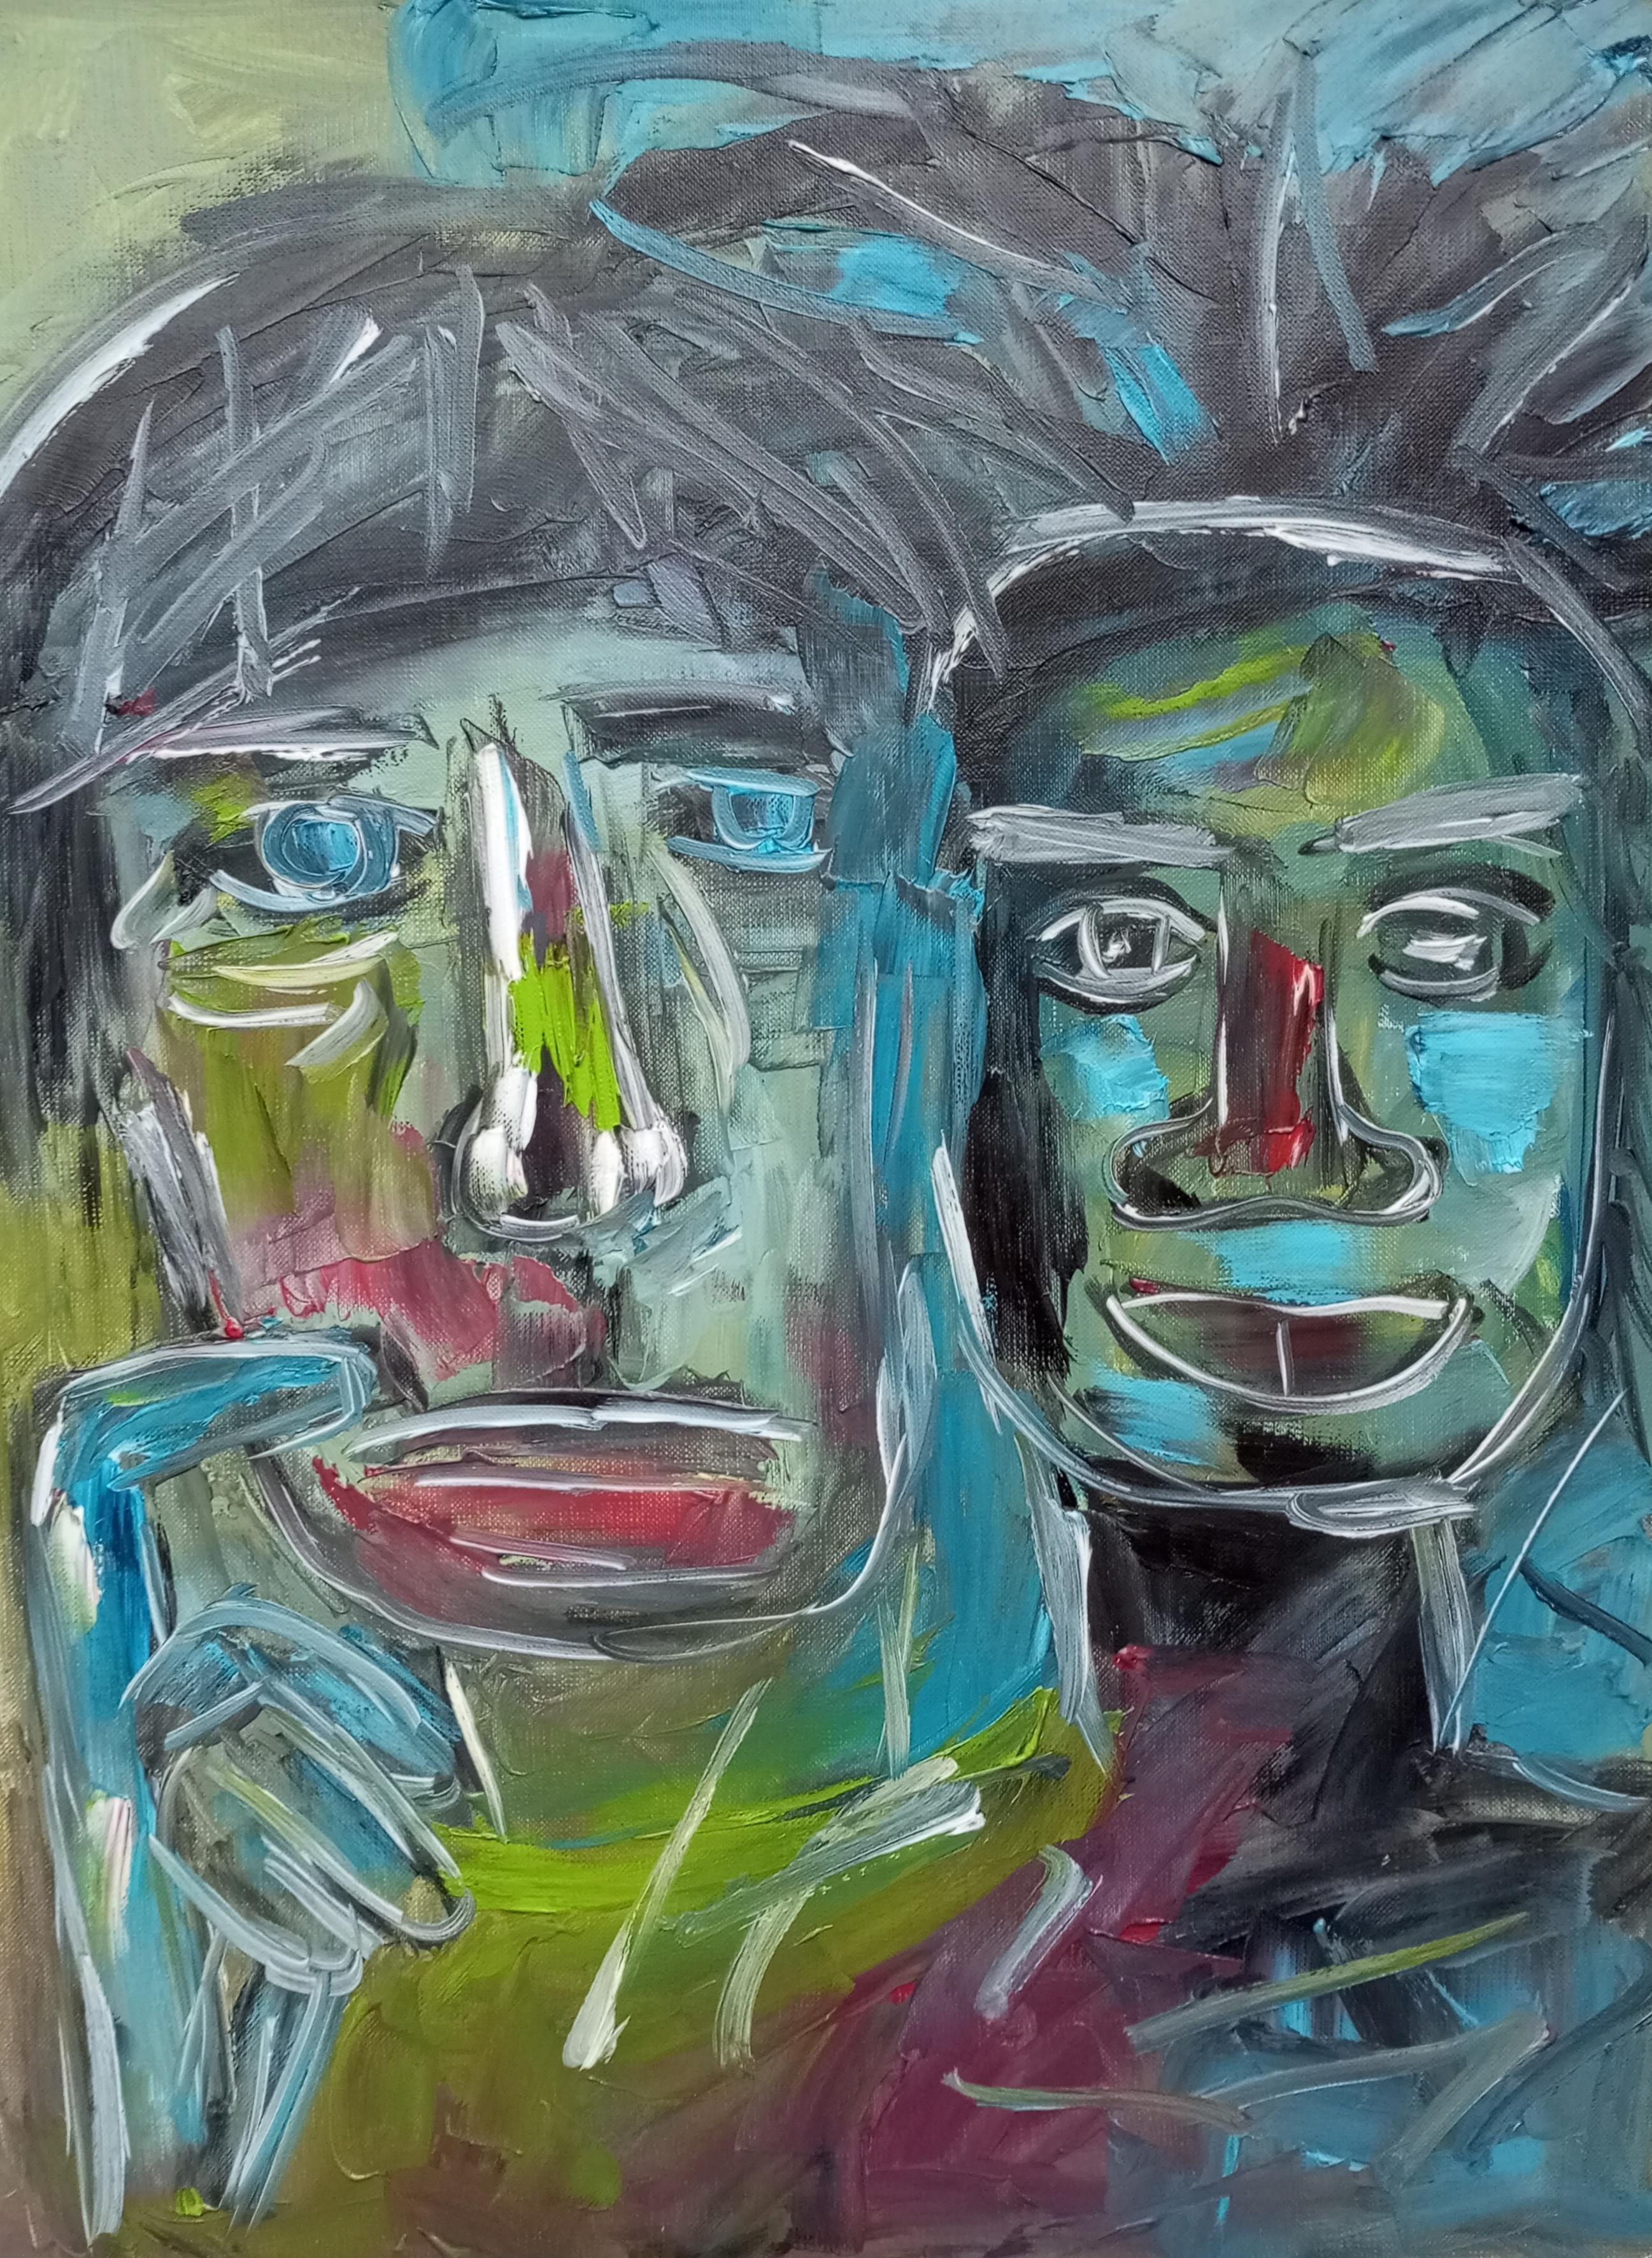  "Amitié Wharol/Basquiat